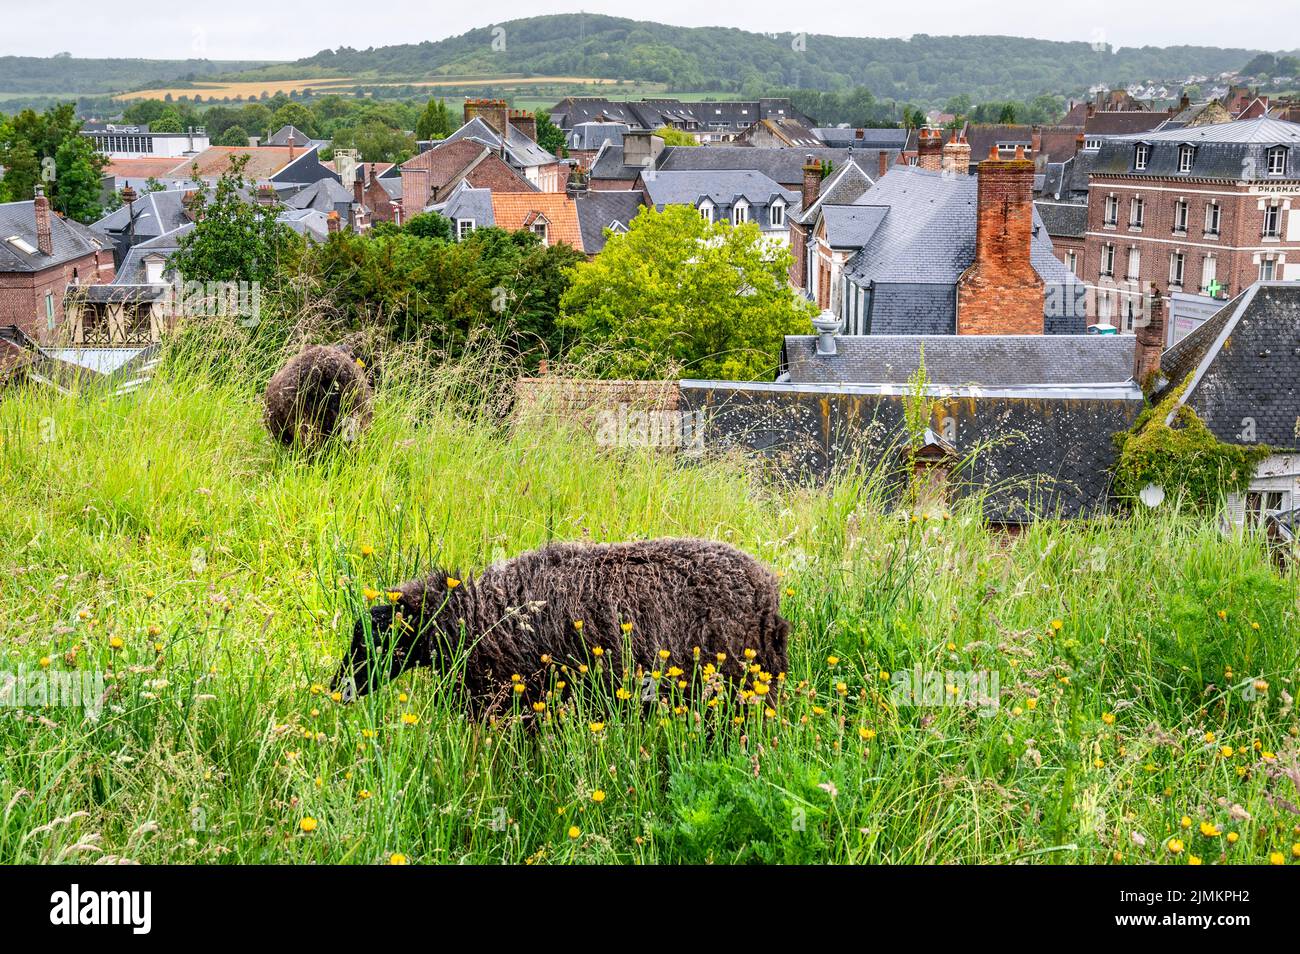 In der kleinen Stadt EU im Norden der Normandie ersetzen Schafe den lauten Dieselmäher auf öffentlichen Grünflächen; Frankreich, Best Practice Stockfoto